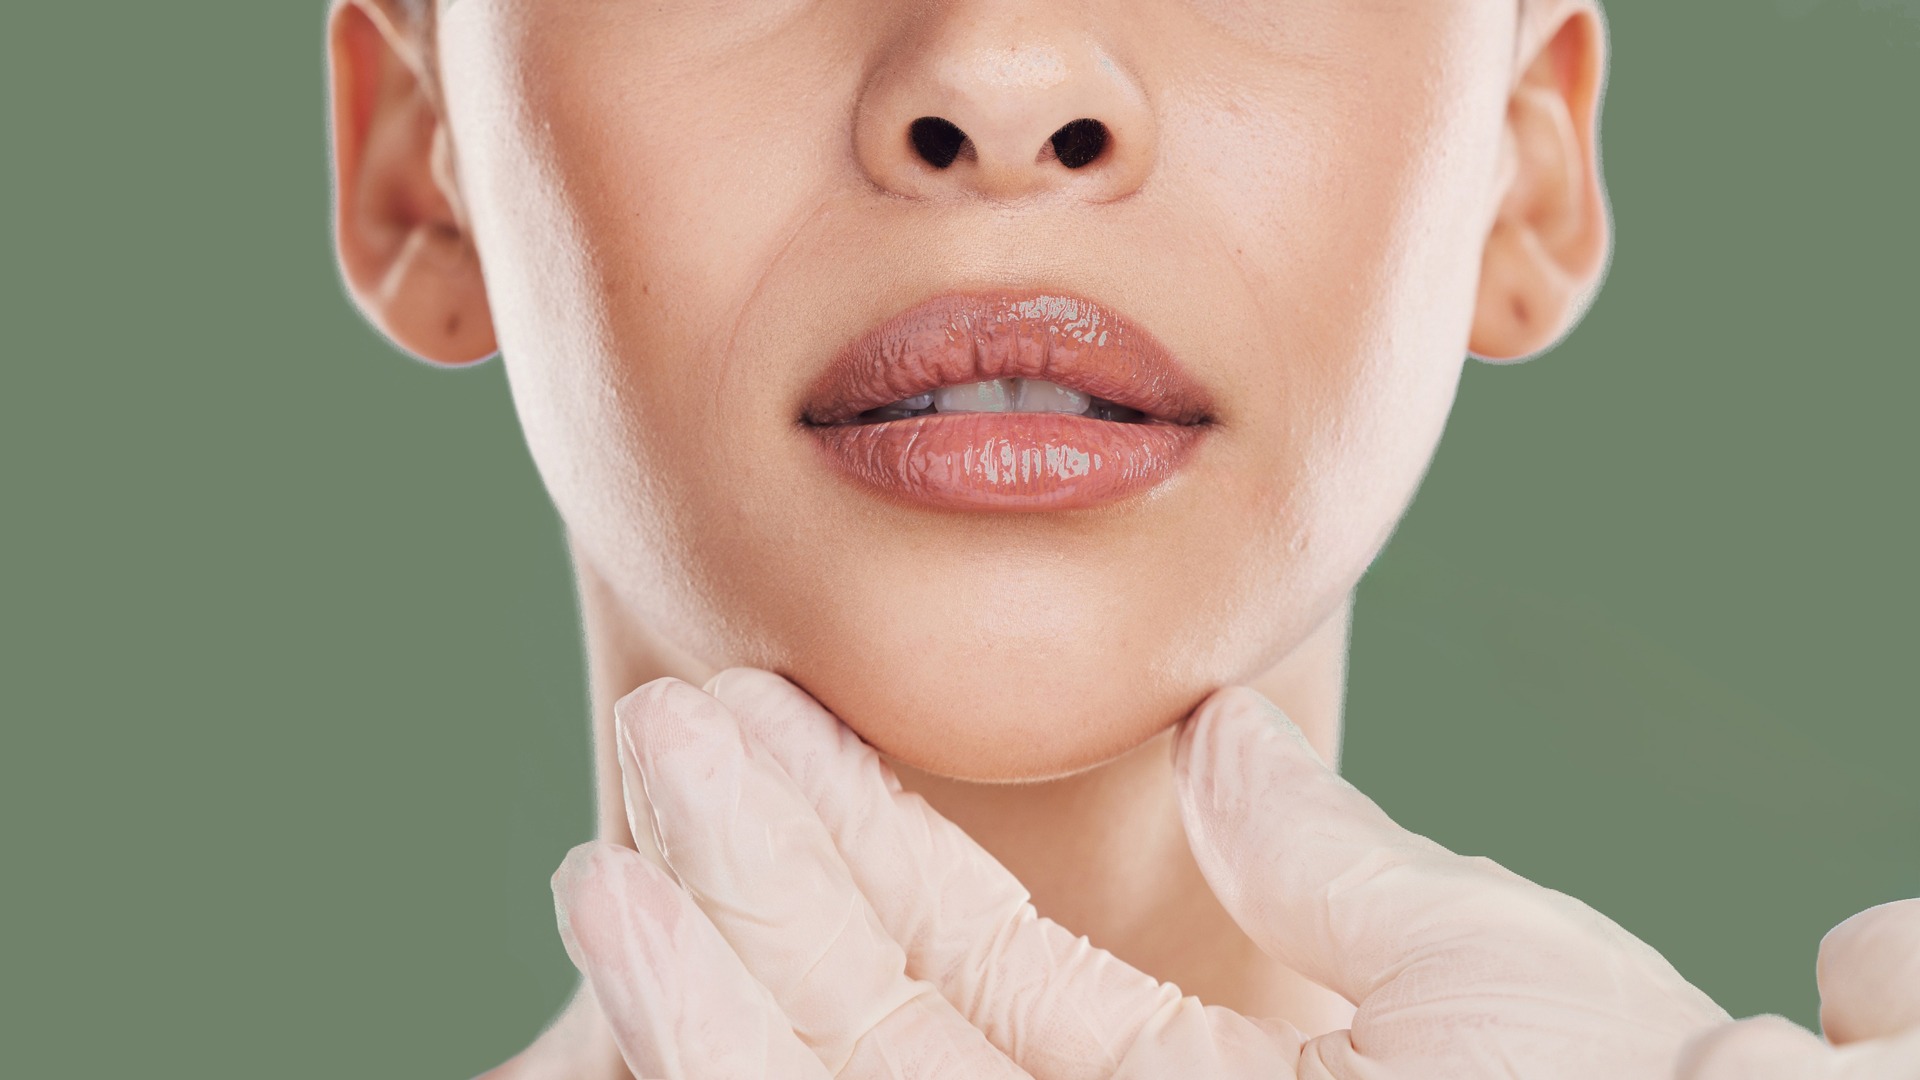 Πόσο διαρκεί η χρήση υαλουρονικού οξέος στα χείλη;